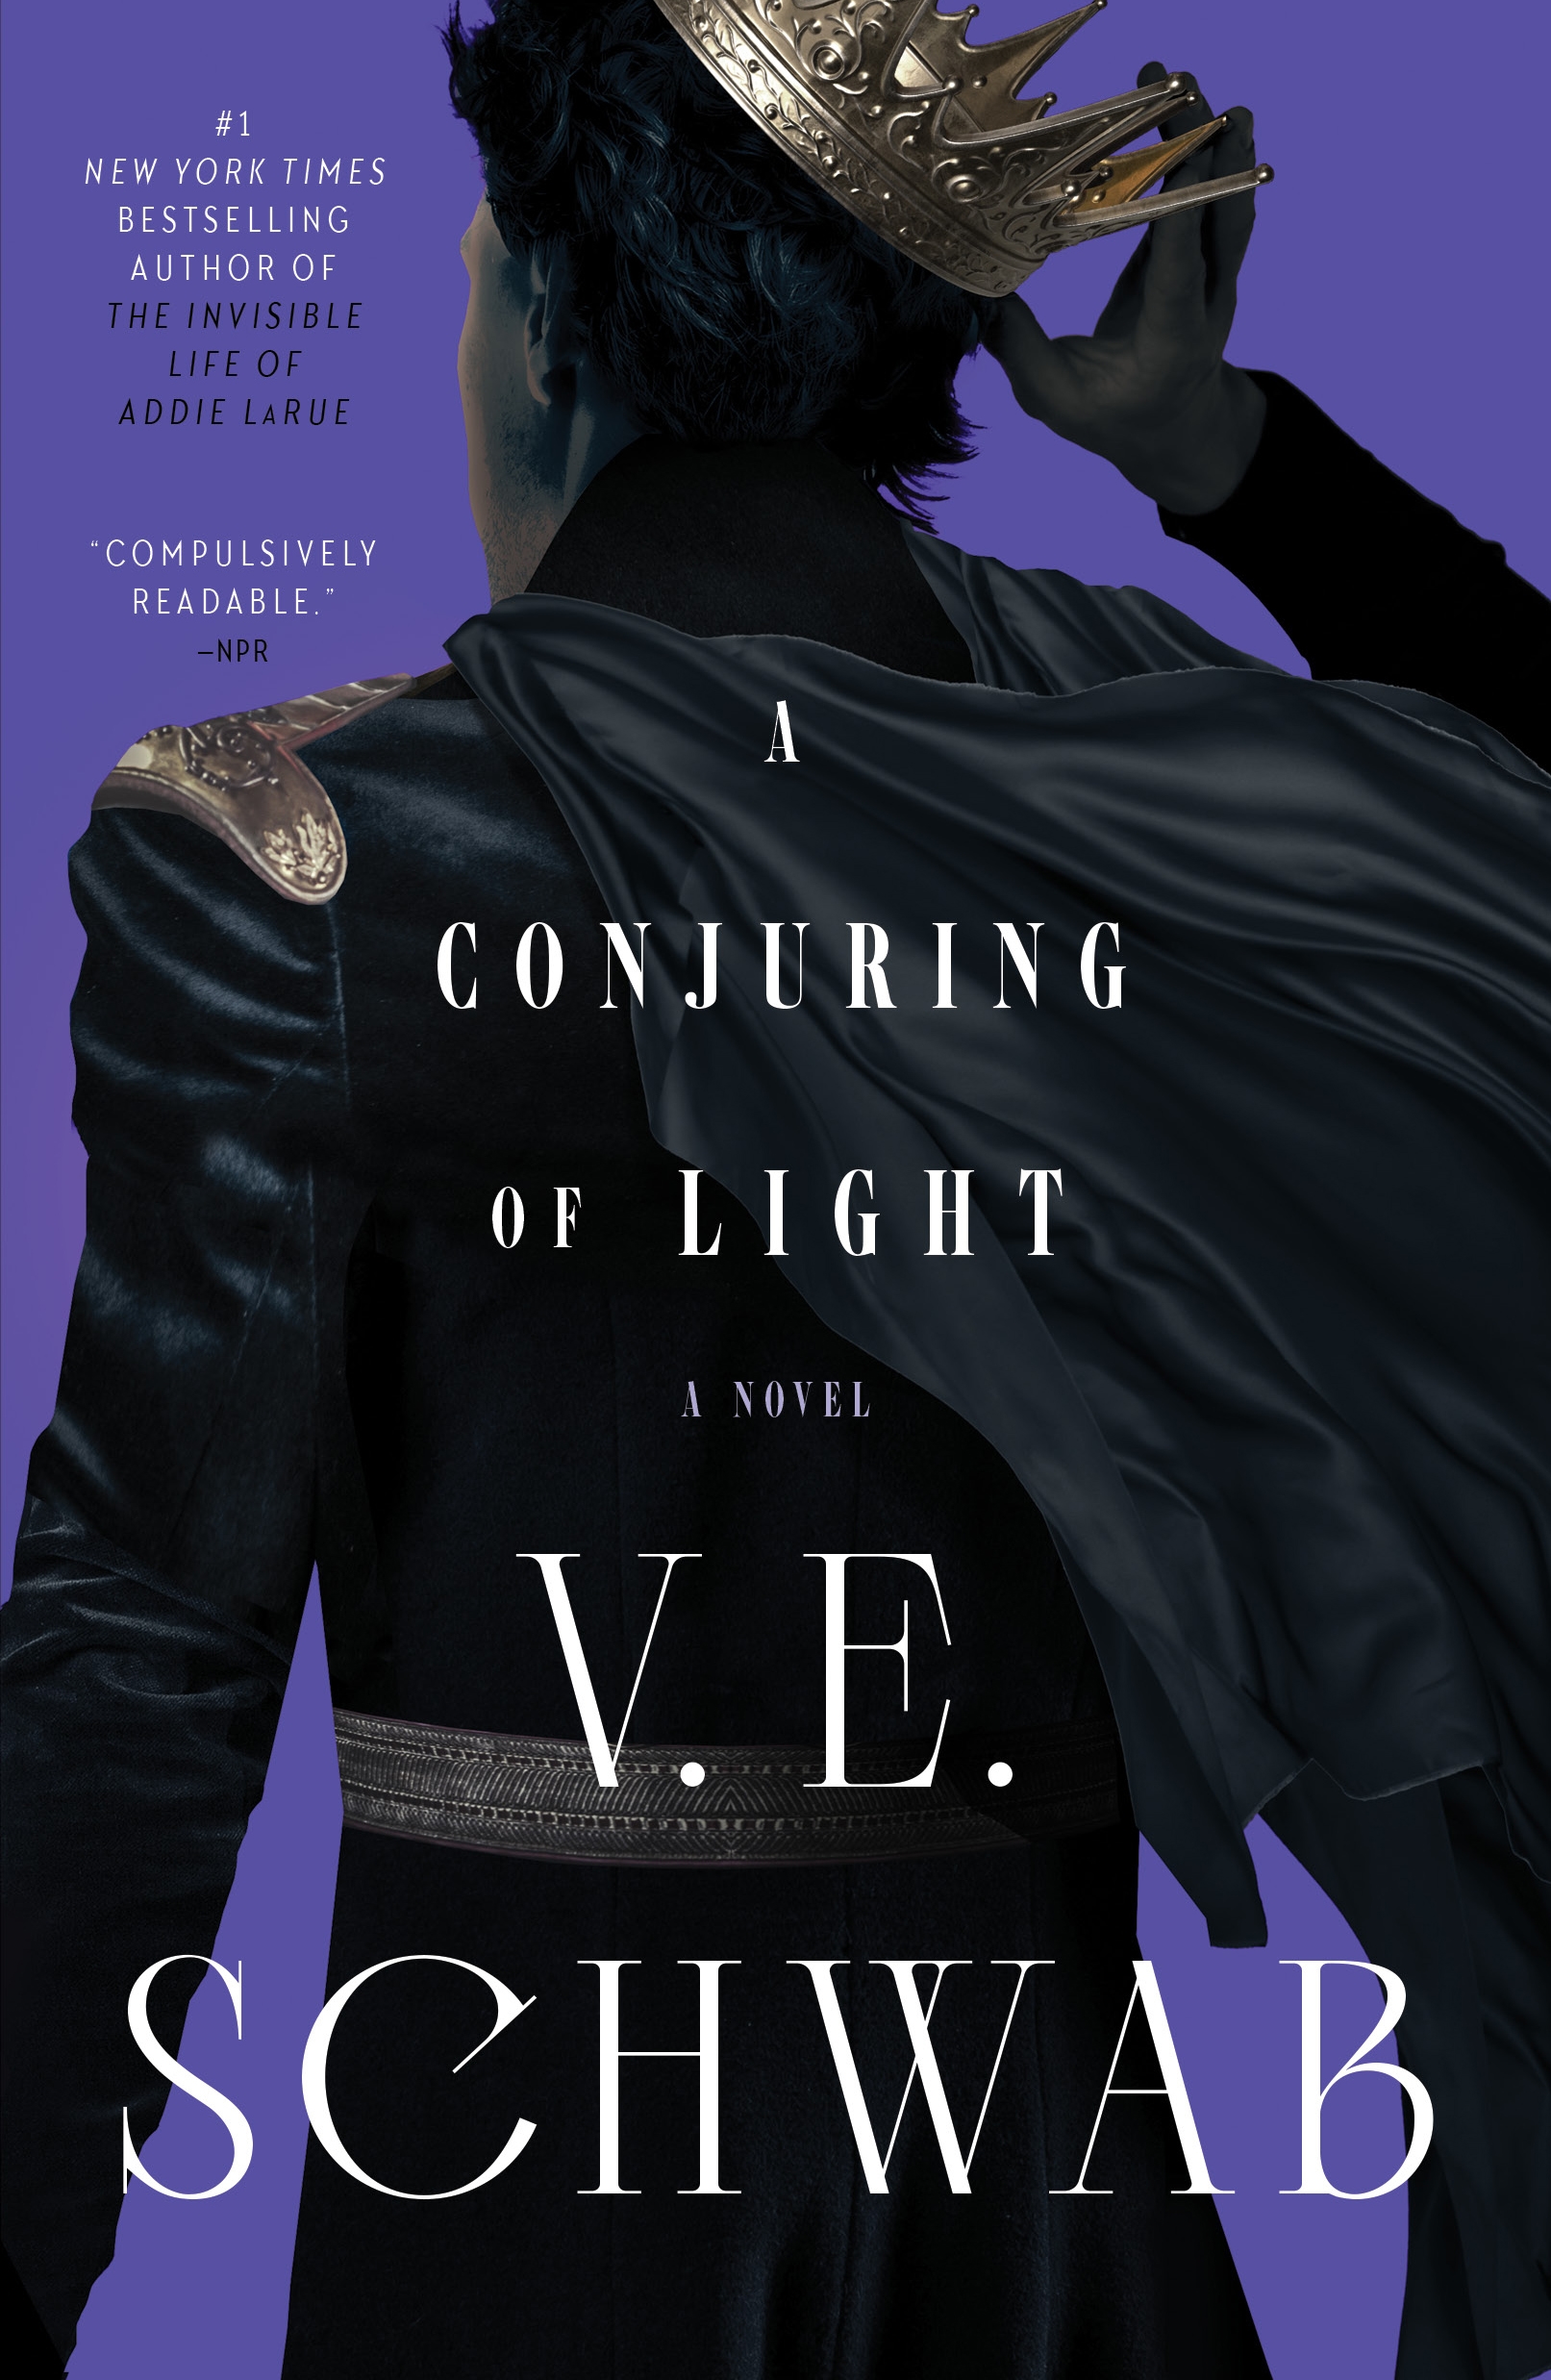 A Conjuring of Light : A Novel by V. E. Schwab